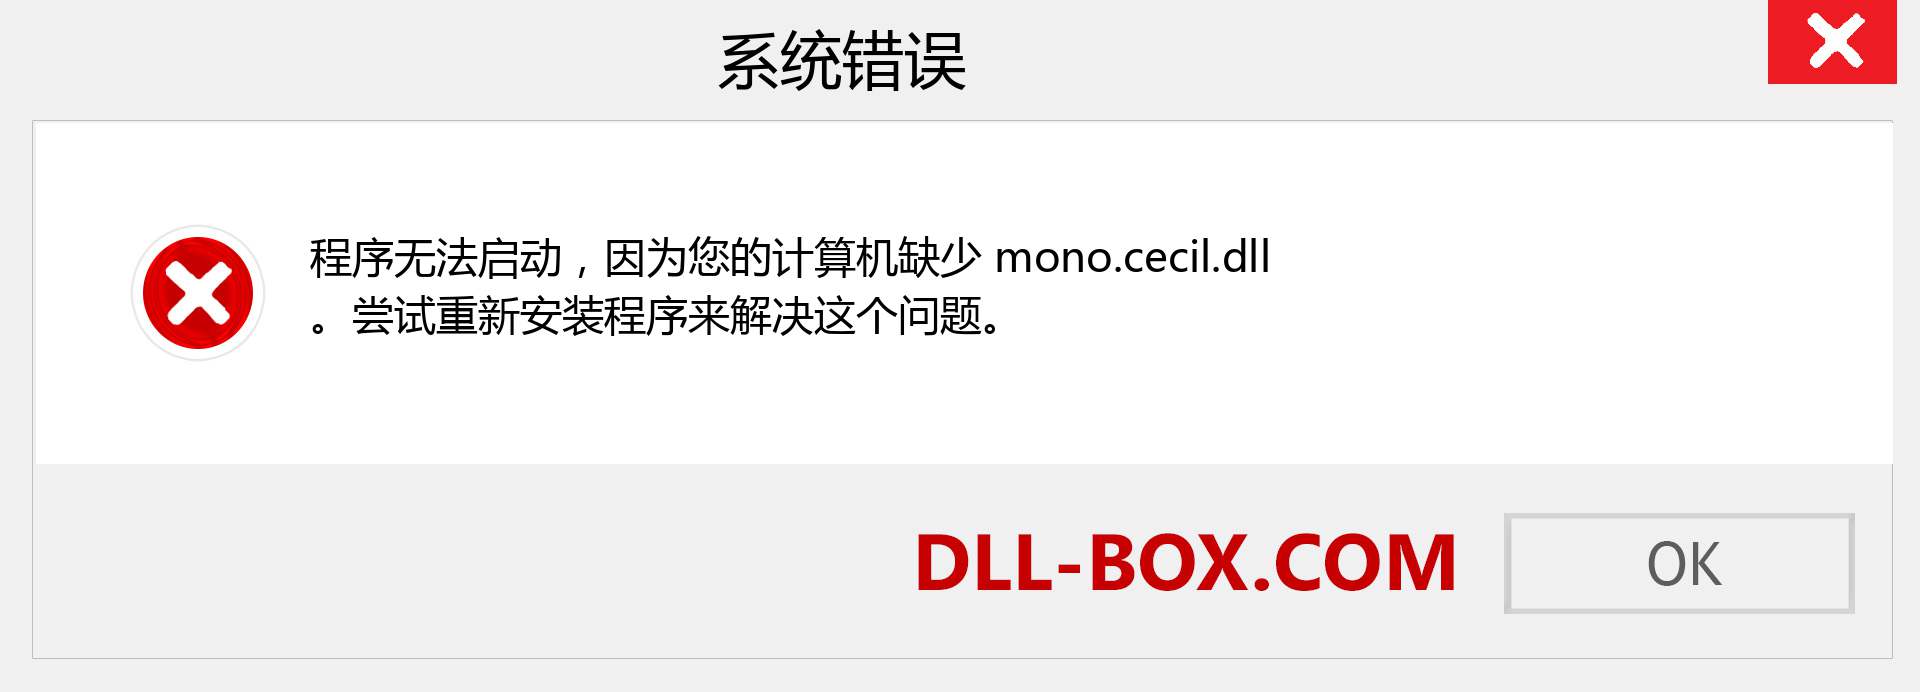 mono.cecil.dll 文件丢失？。 适用于 Windows 7、8、10 的下载 - 修复 Windows、照片、图像上的 mono.cecil dll 丢失错误